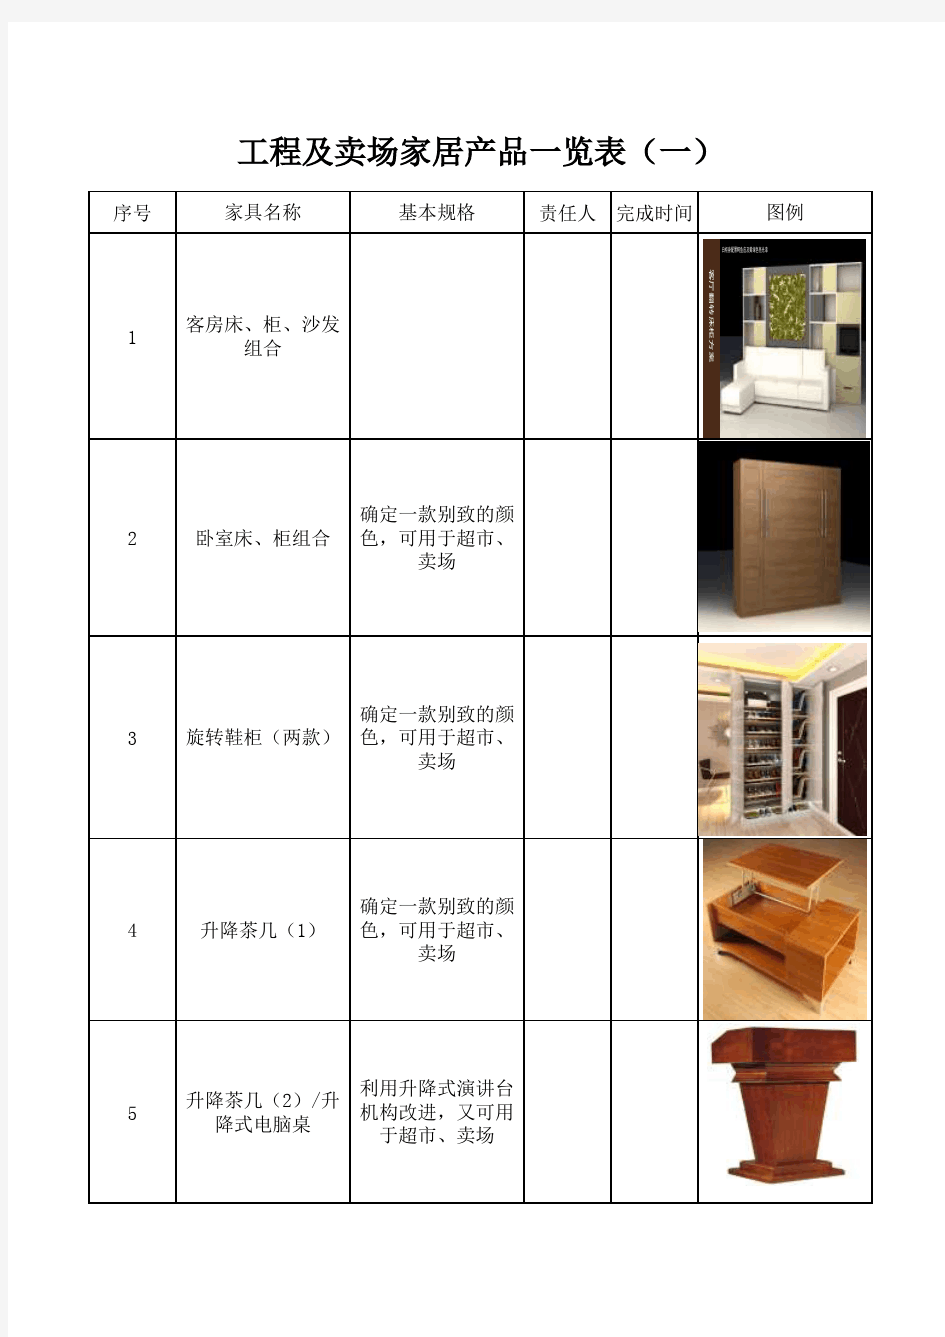 家居产品分类(一)